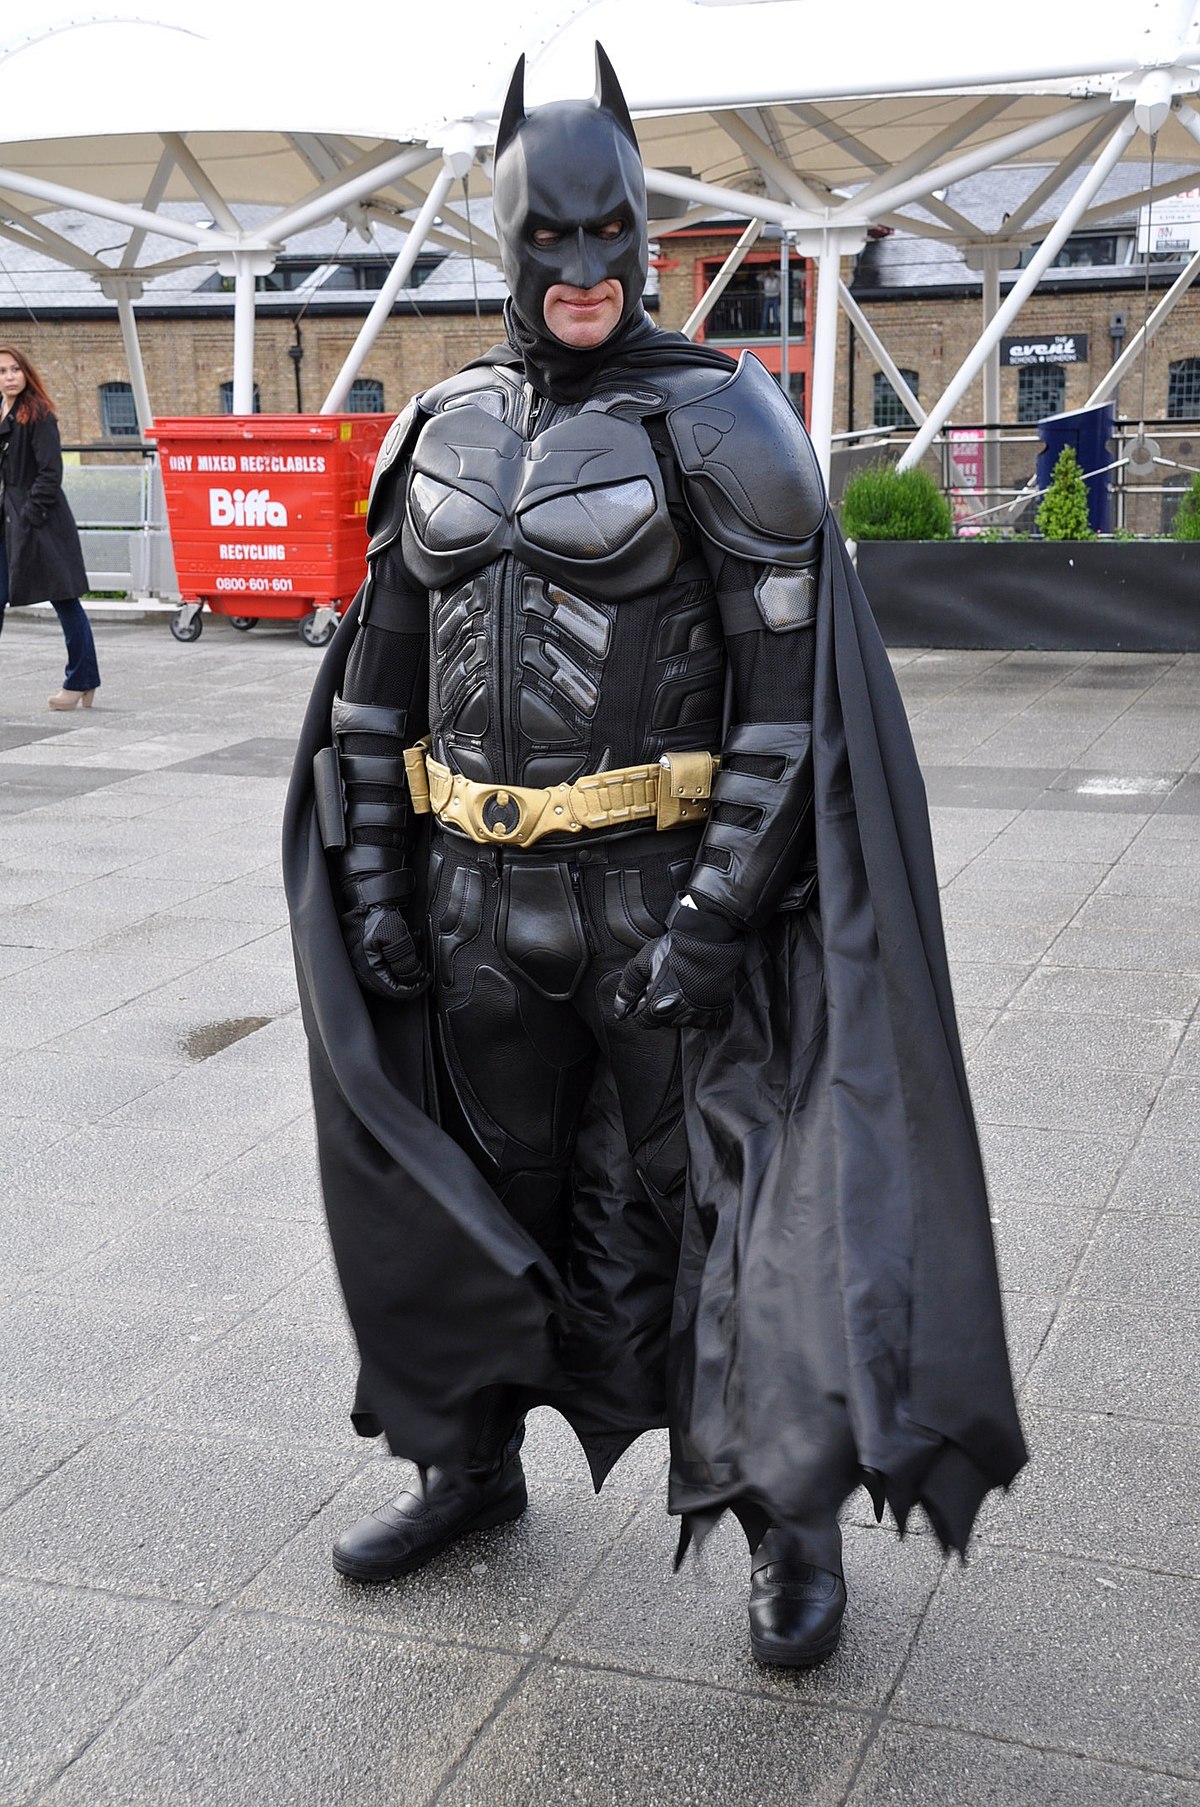 Batman – Wikipedia
